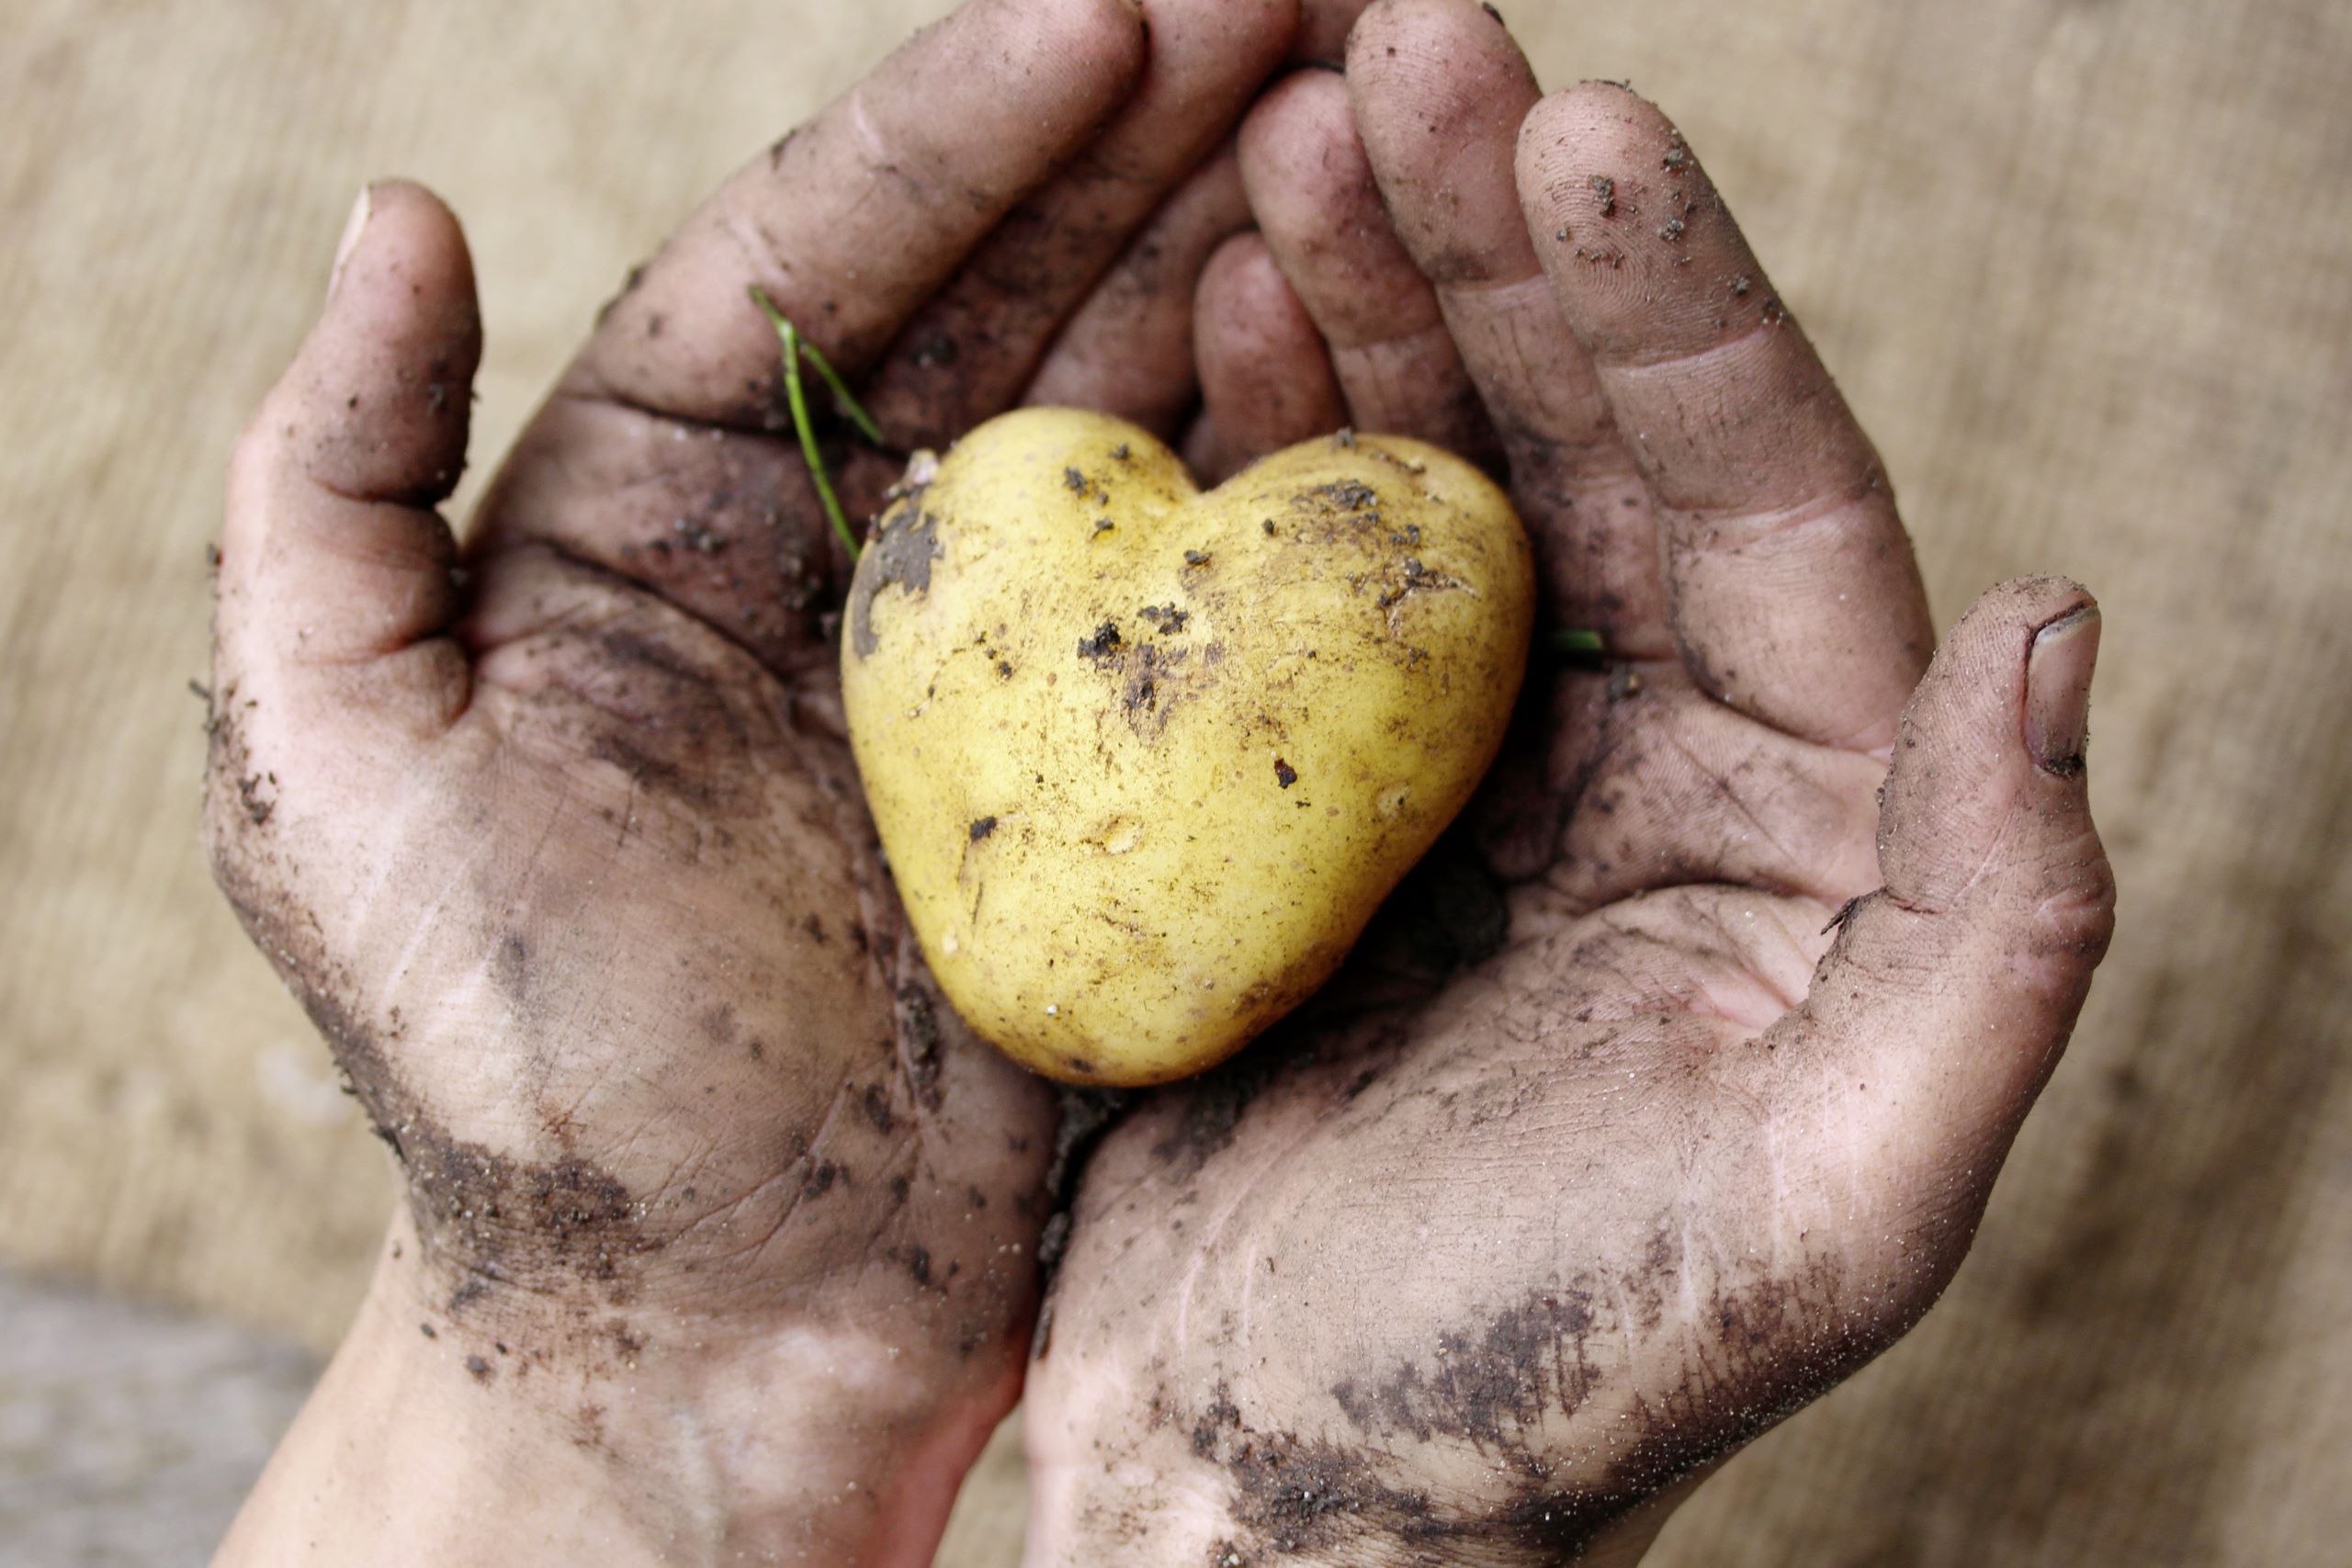 Mit Erde beschmutzte Hände präsentieren eine Kartoffel, die in Form eines Herzens geschnitzt wurde.